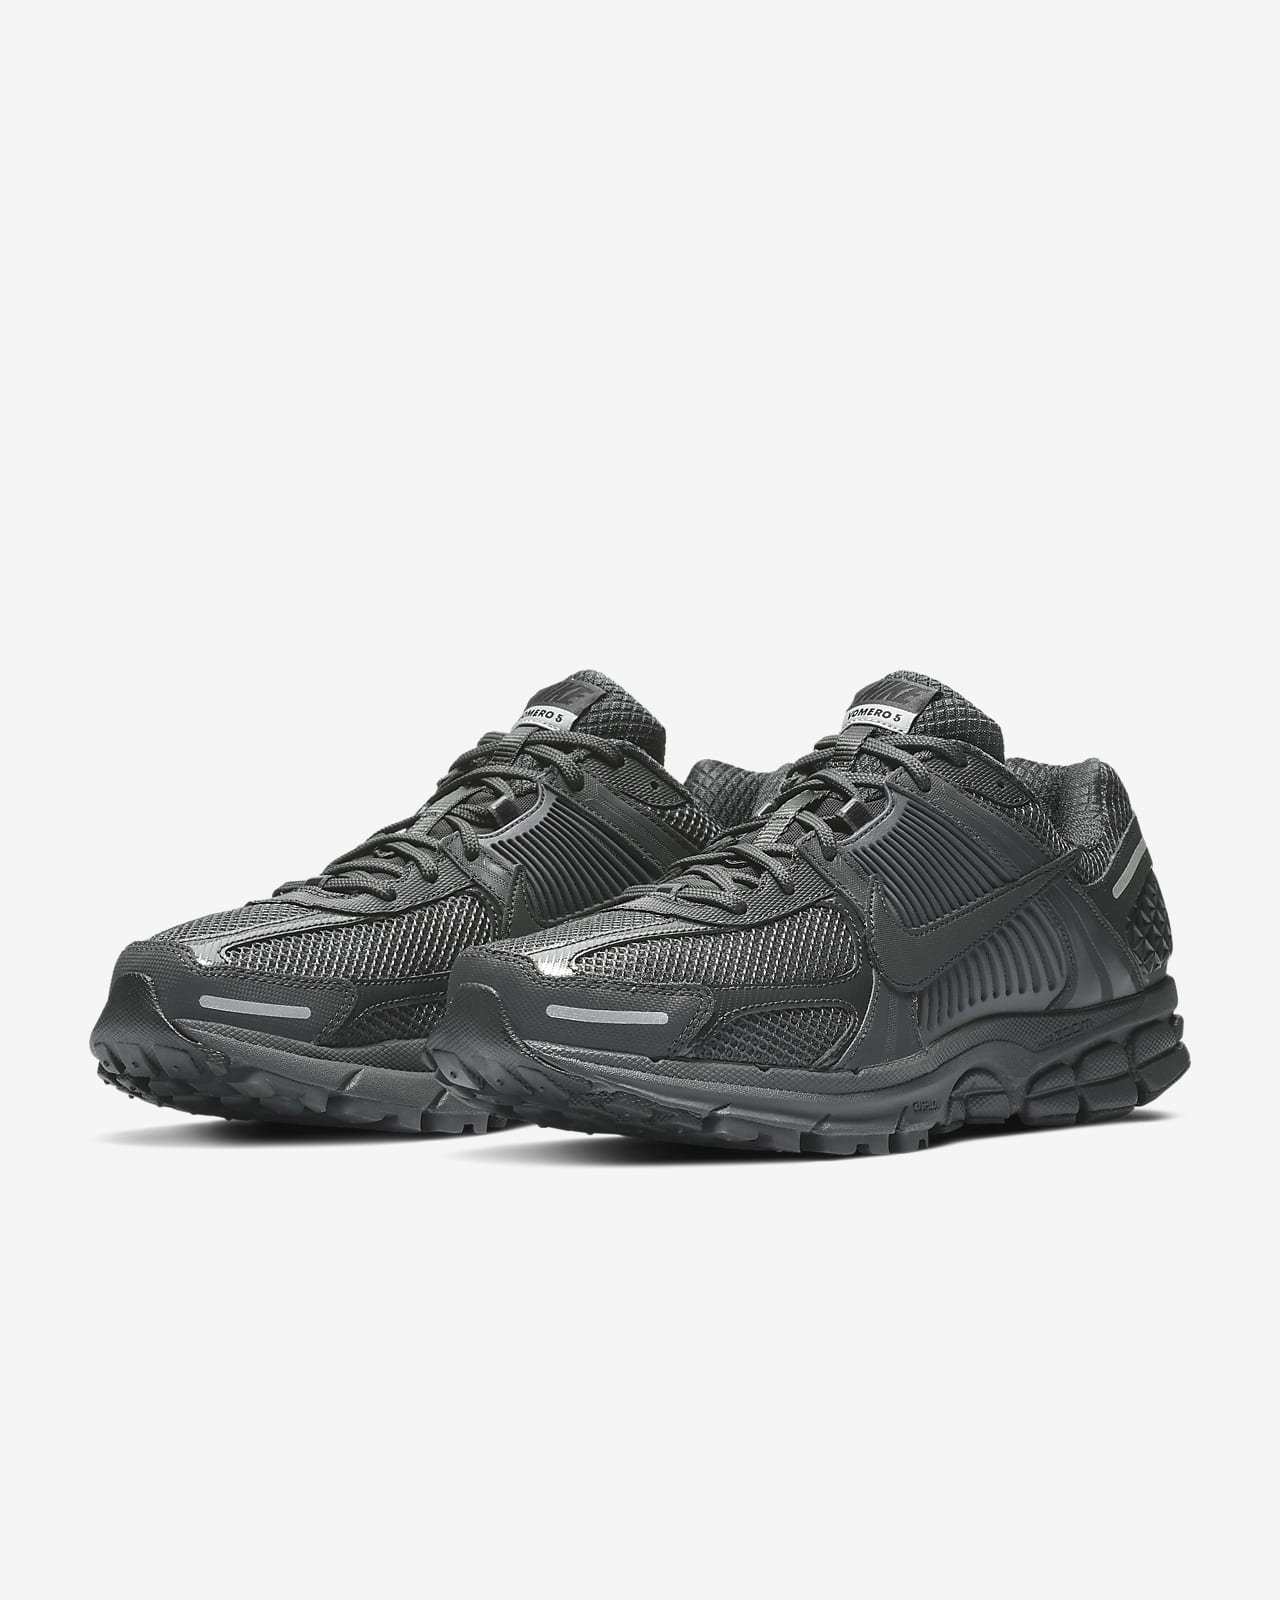 Voorkomen overzien Plantkunde Nike Zoom Vomero 5 Men's Shoes. Nike ID